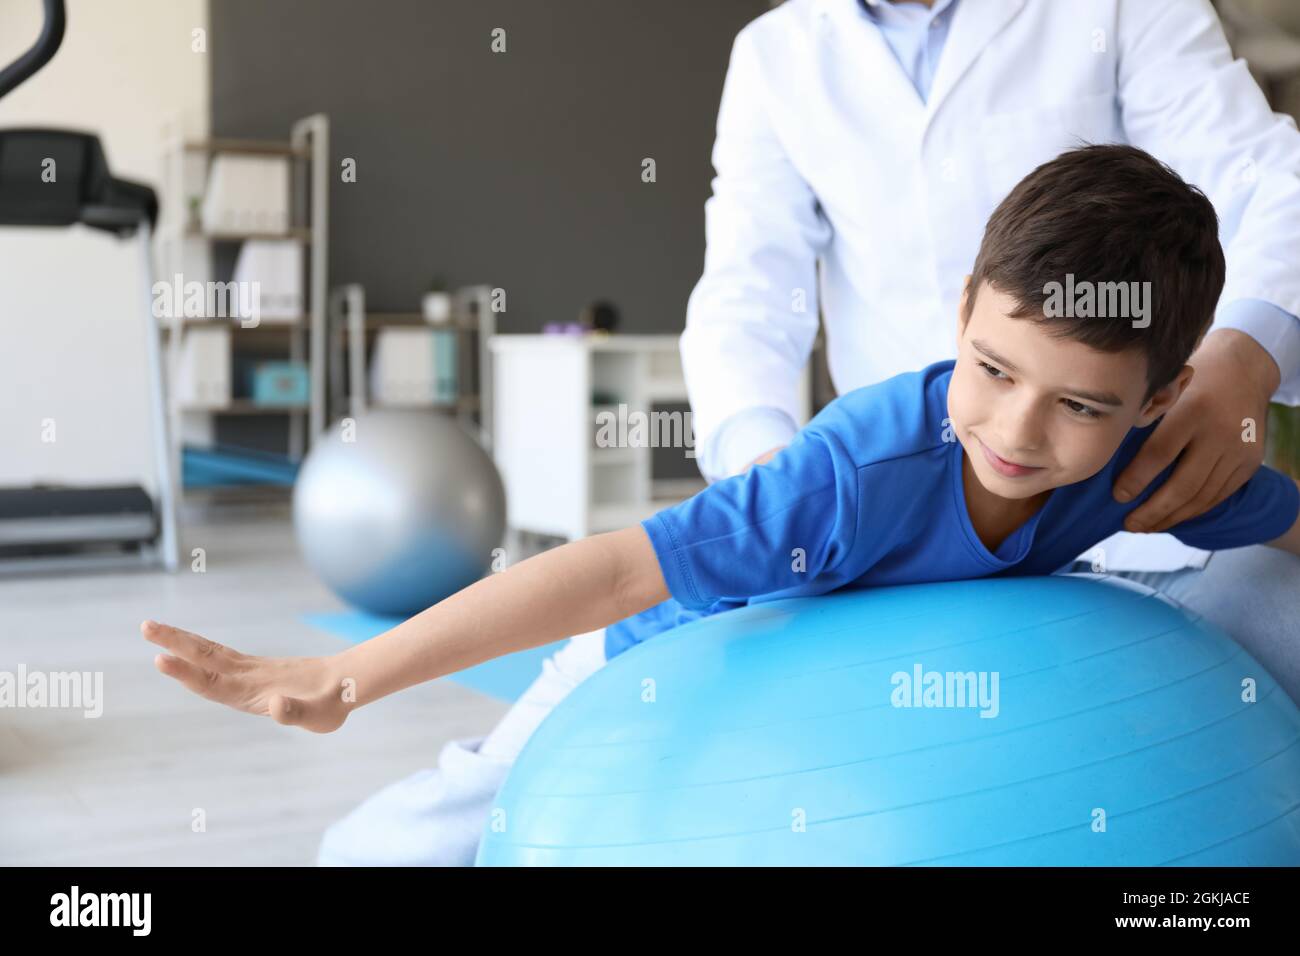 Physiothérapeute travaillant avec un garçon dans un centre de réadaptation Banque D'Images